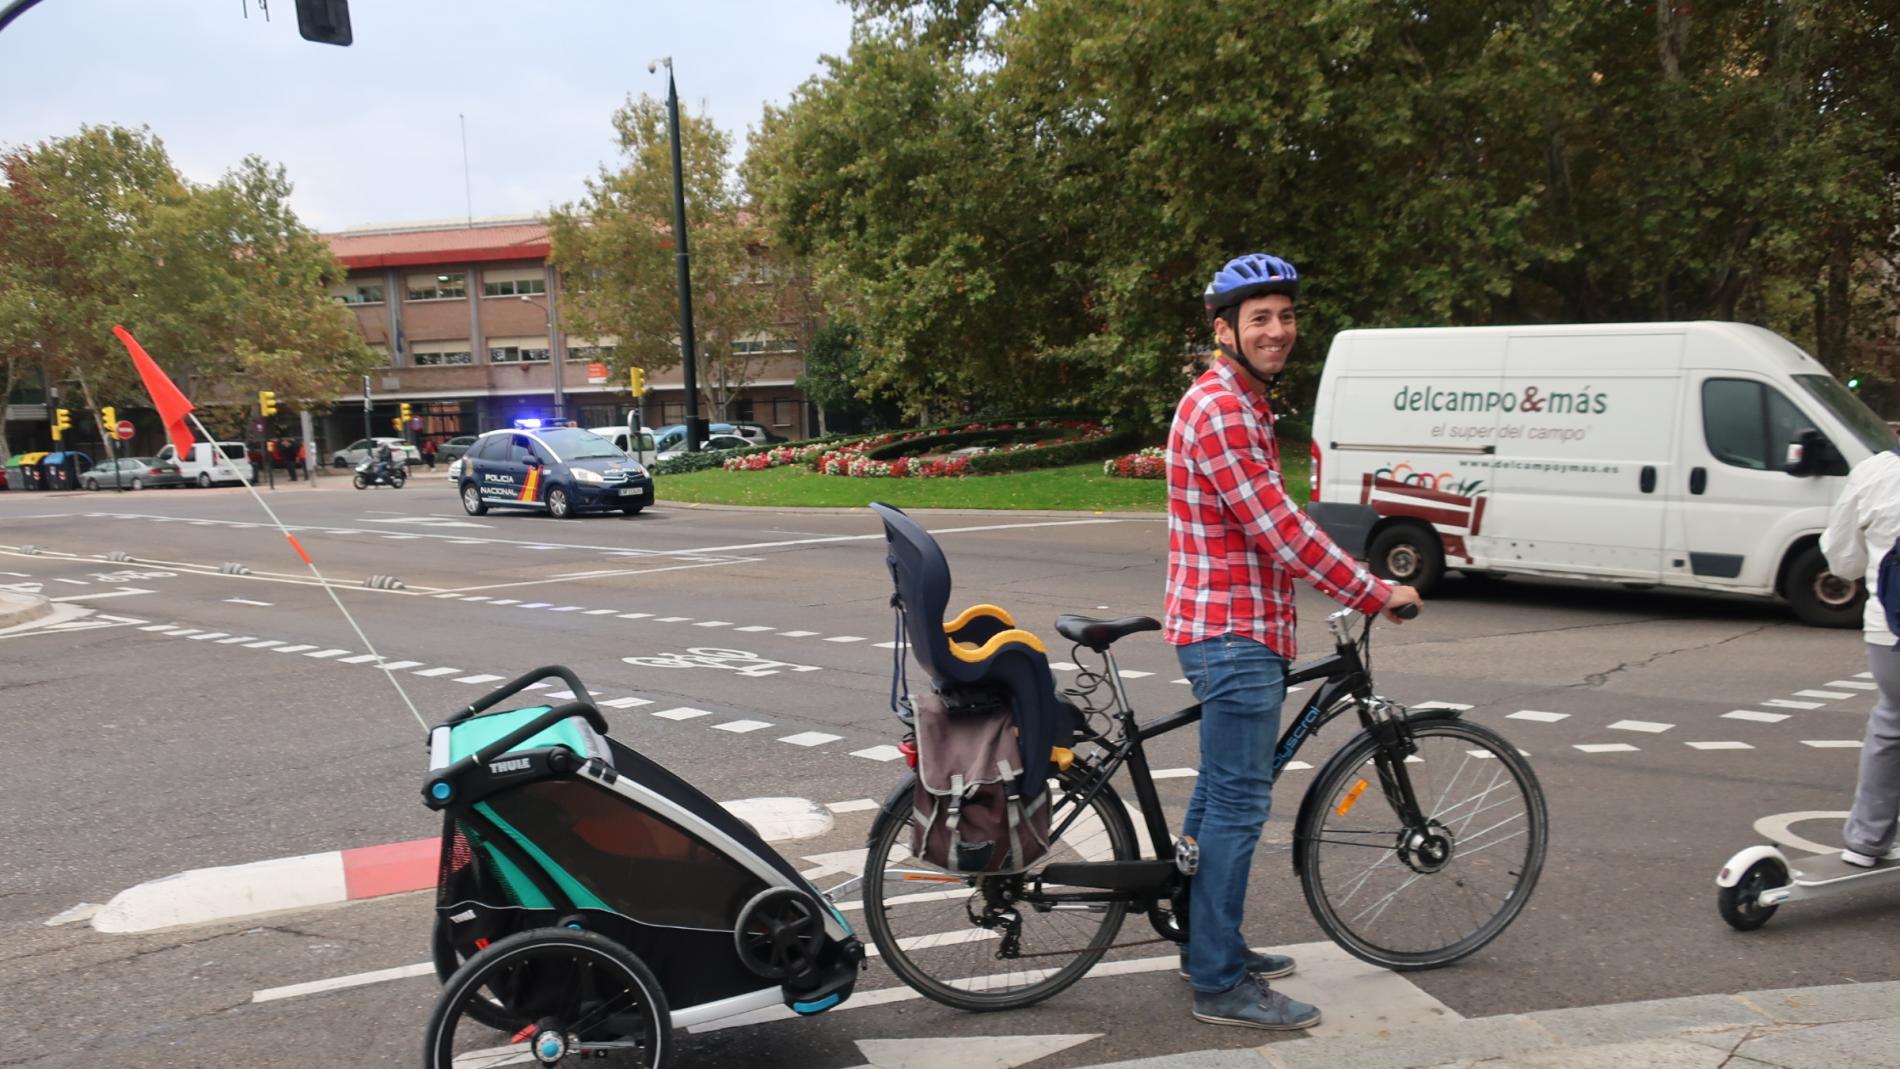 Las bicicletas podrán llevar remolques para niños, España